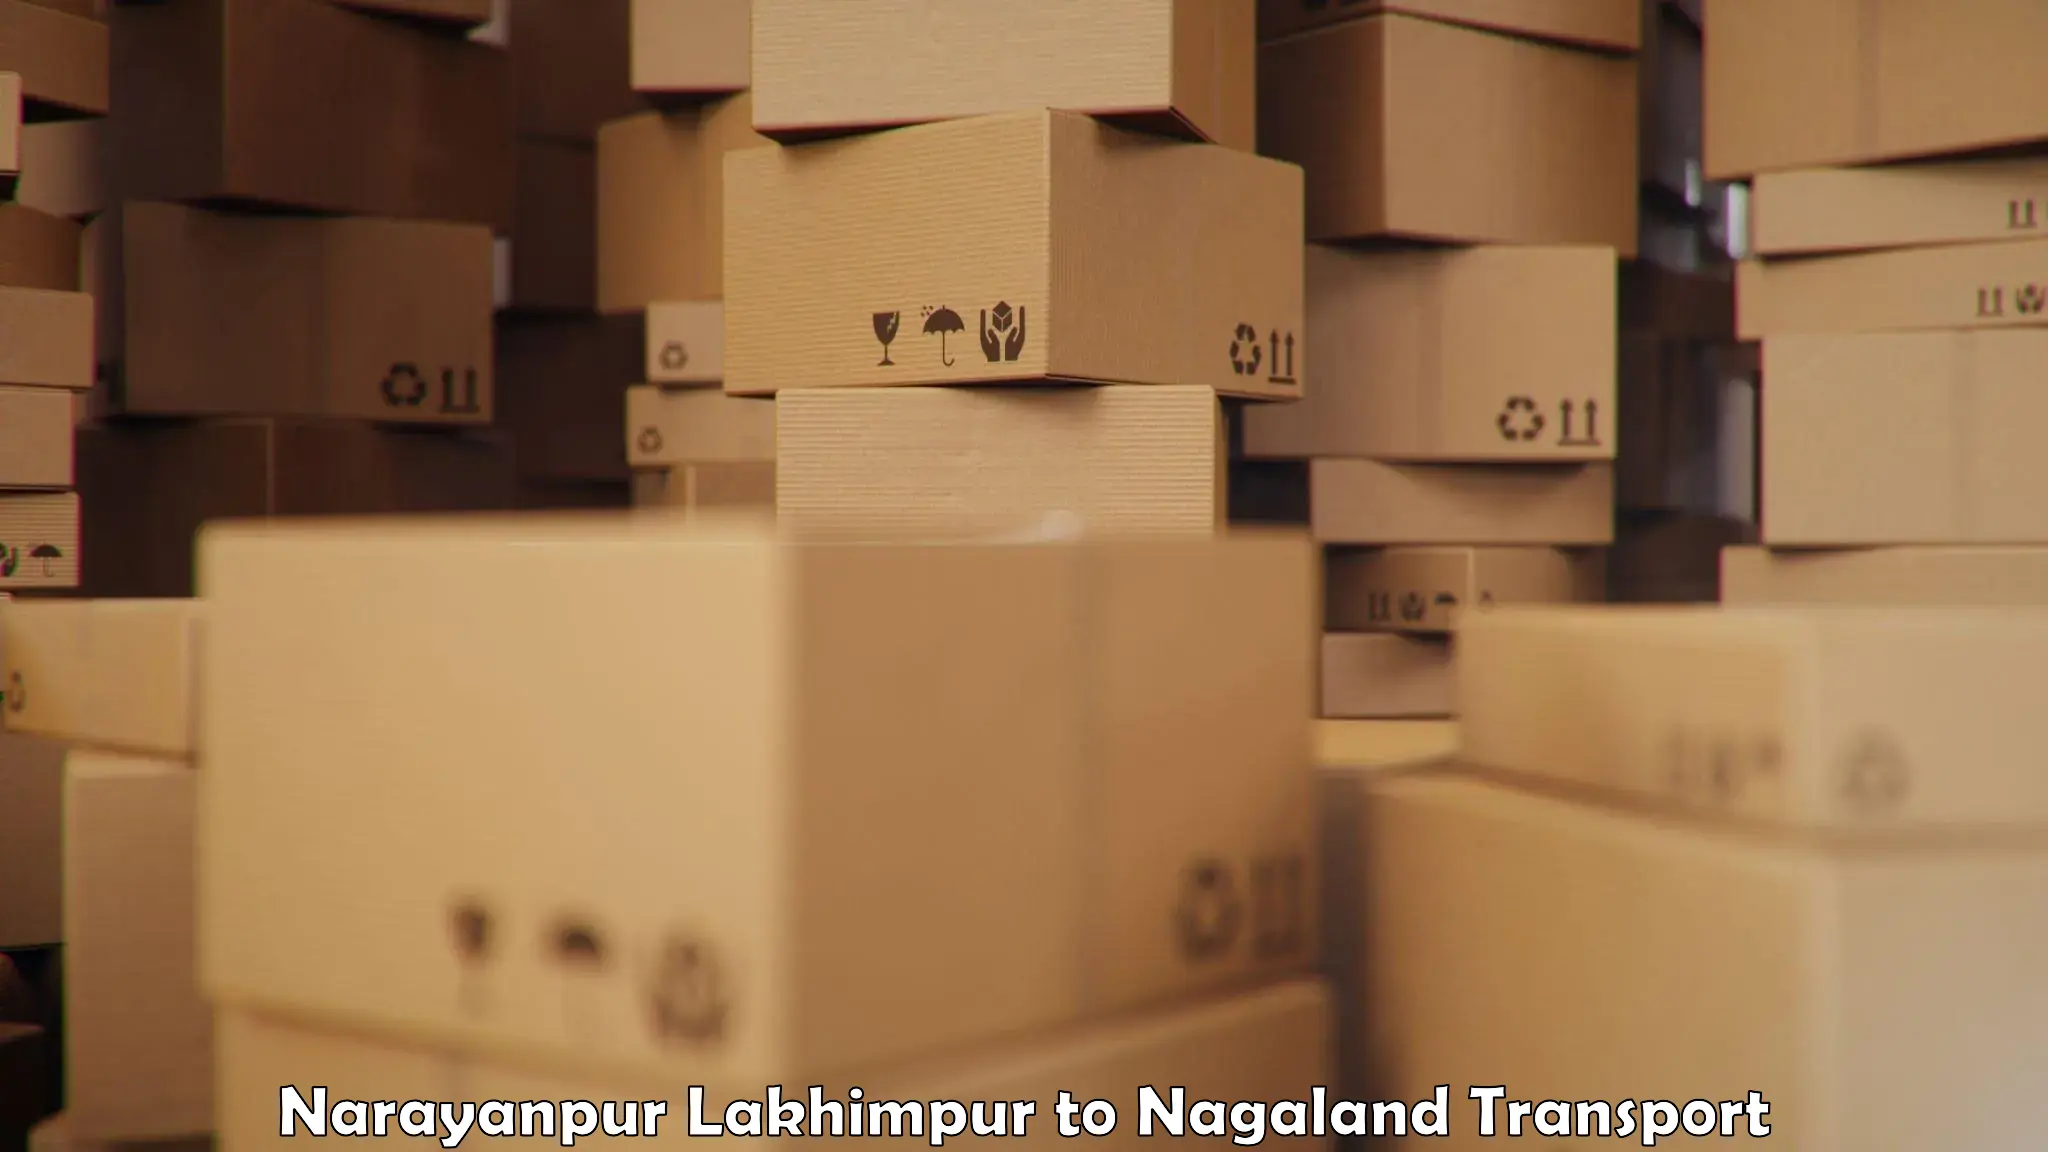 Pick up transport service Narayanpur Lakhimpur to Kohima